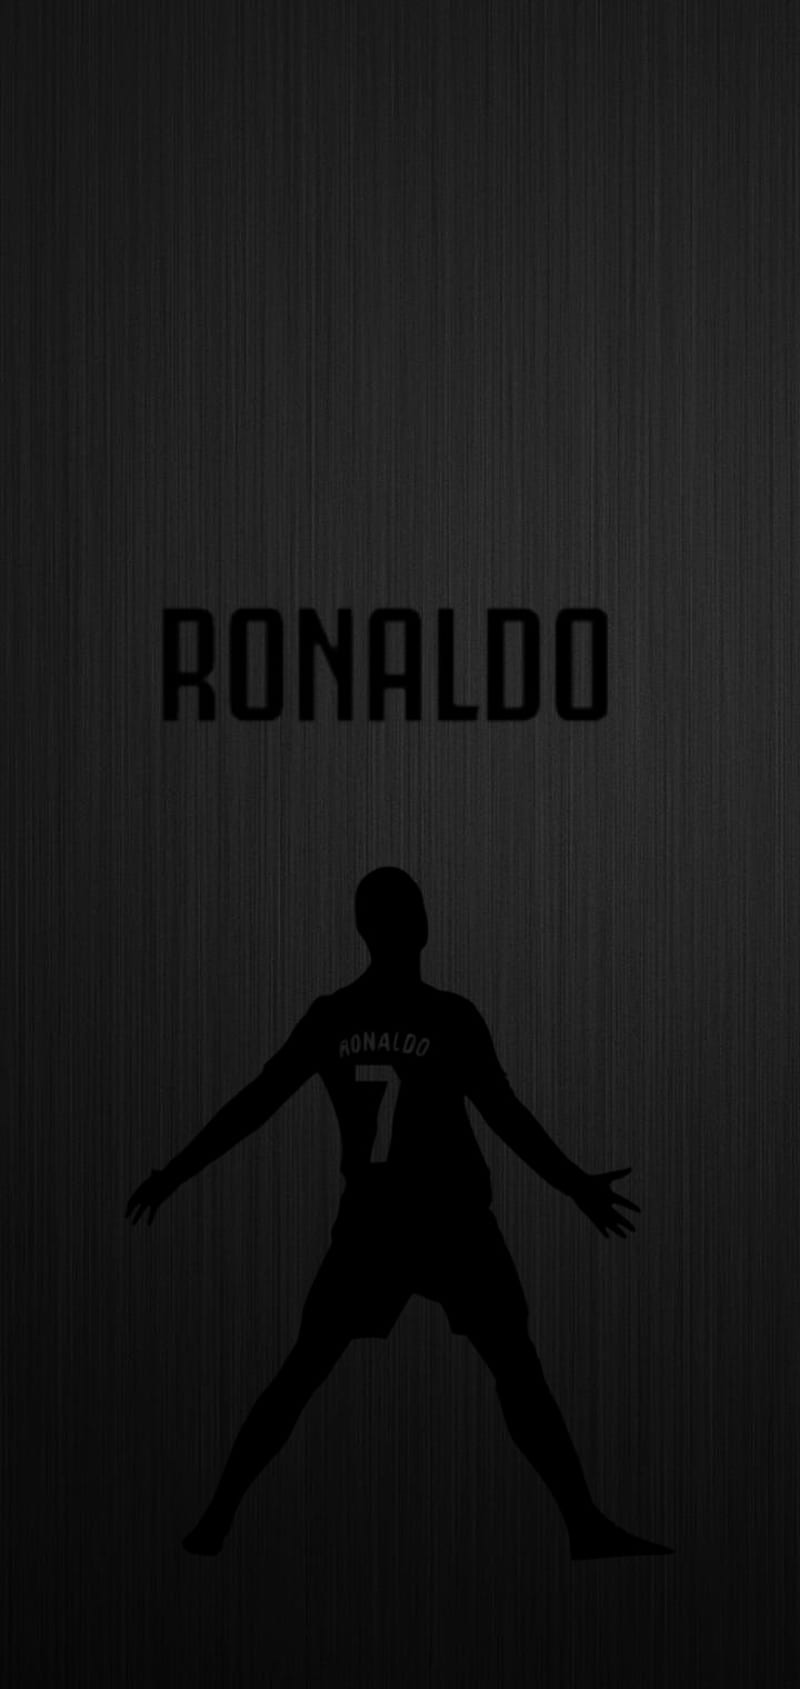 Andy on X Cristiano Ronaldo Wallpaper Cristiano realmadriden  Cristiano Rts Are Appreciated httpstcowB91U7ZasM  X